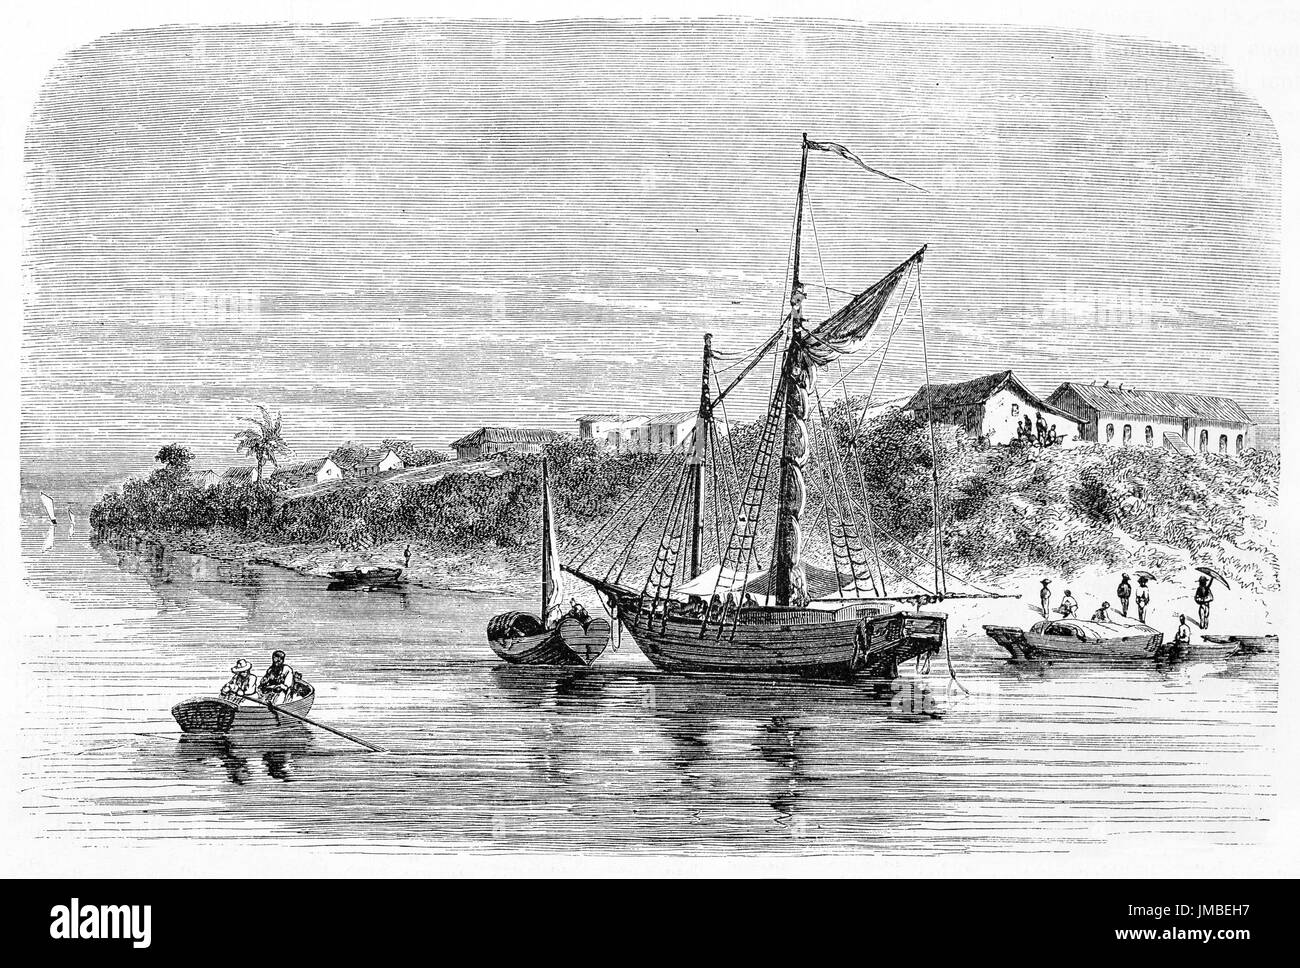 Petite ville sur la côte végétative, face à une mer calme et à des navires. Serpa, le long de l'Amazone, Brésil. Art par Riou, Biard et Maurard, 1861 Banque D'Images